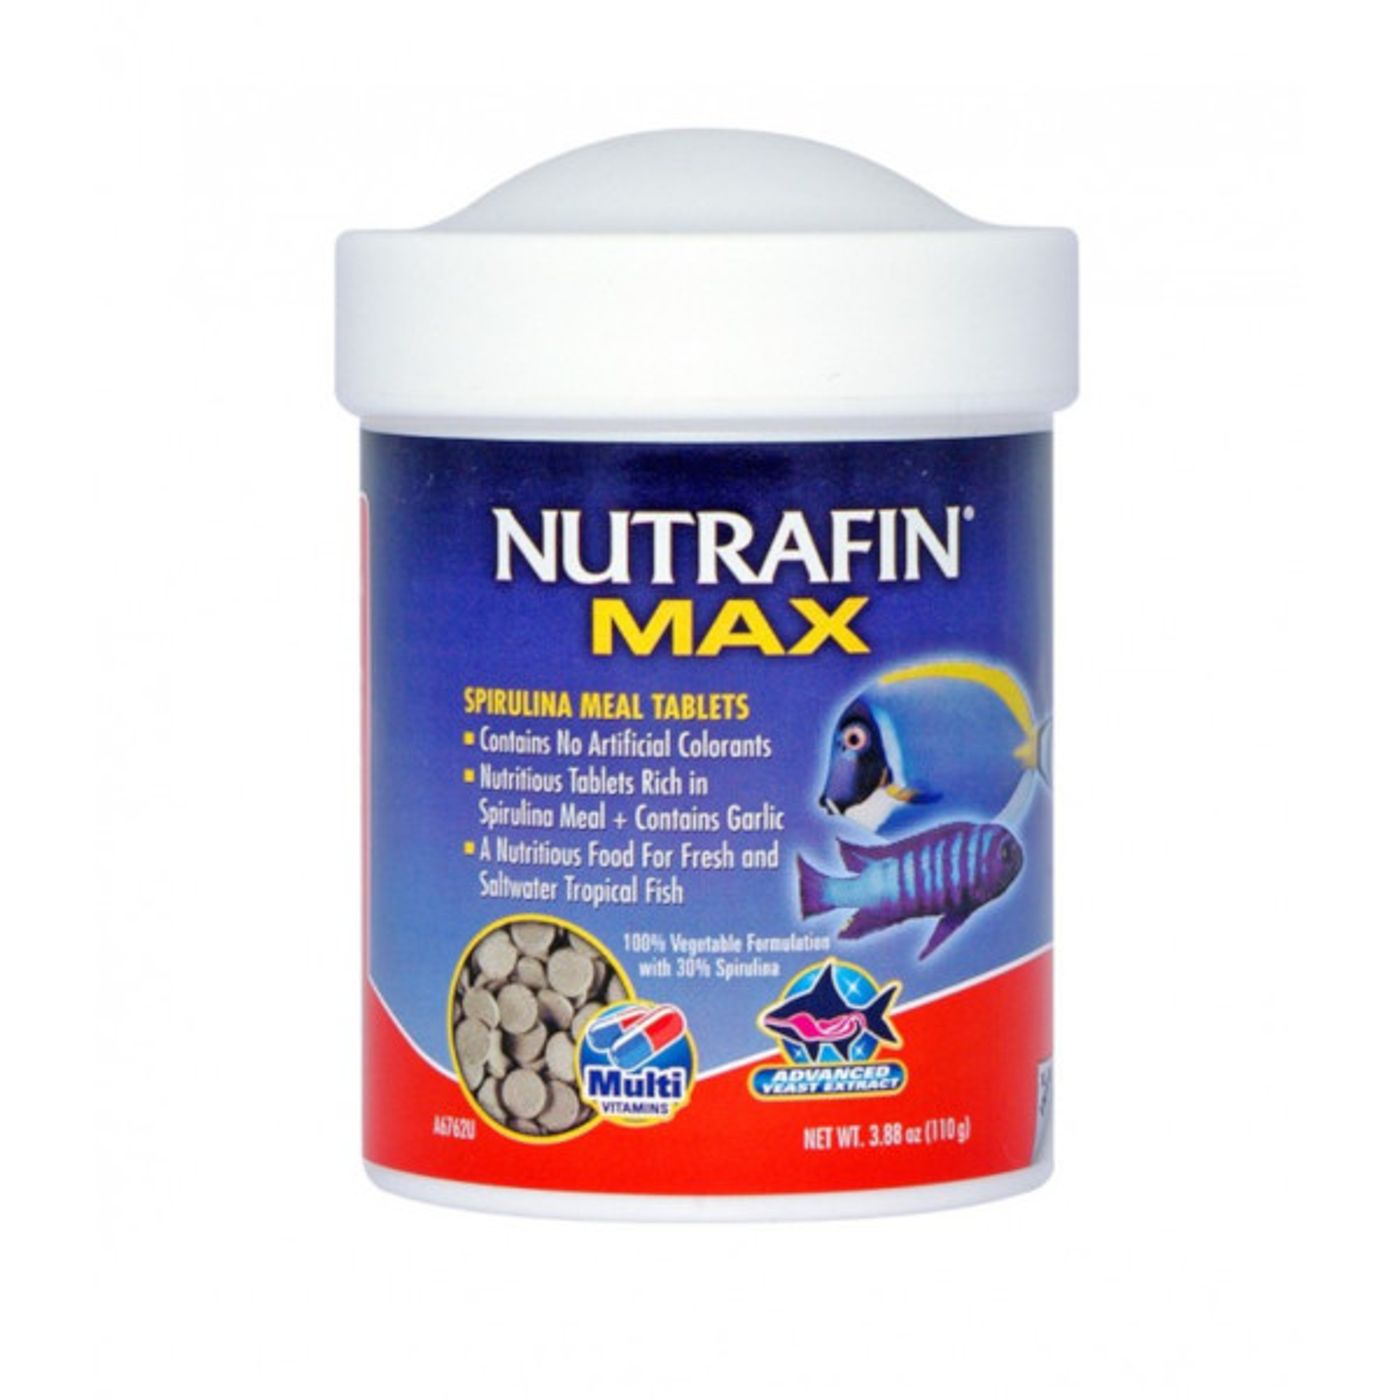 NUTRAFIN-Max-Pastilhas-de-Spirulina--110g-